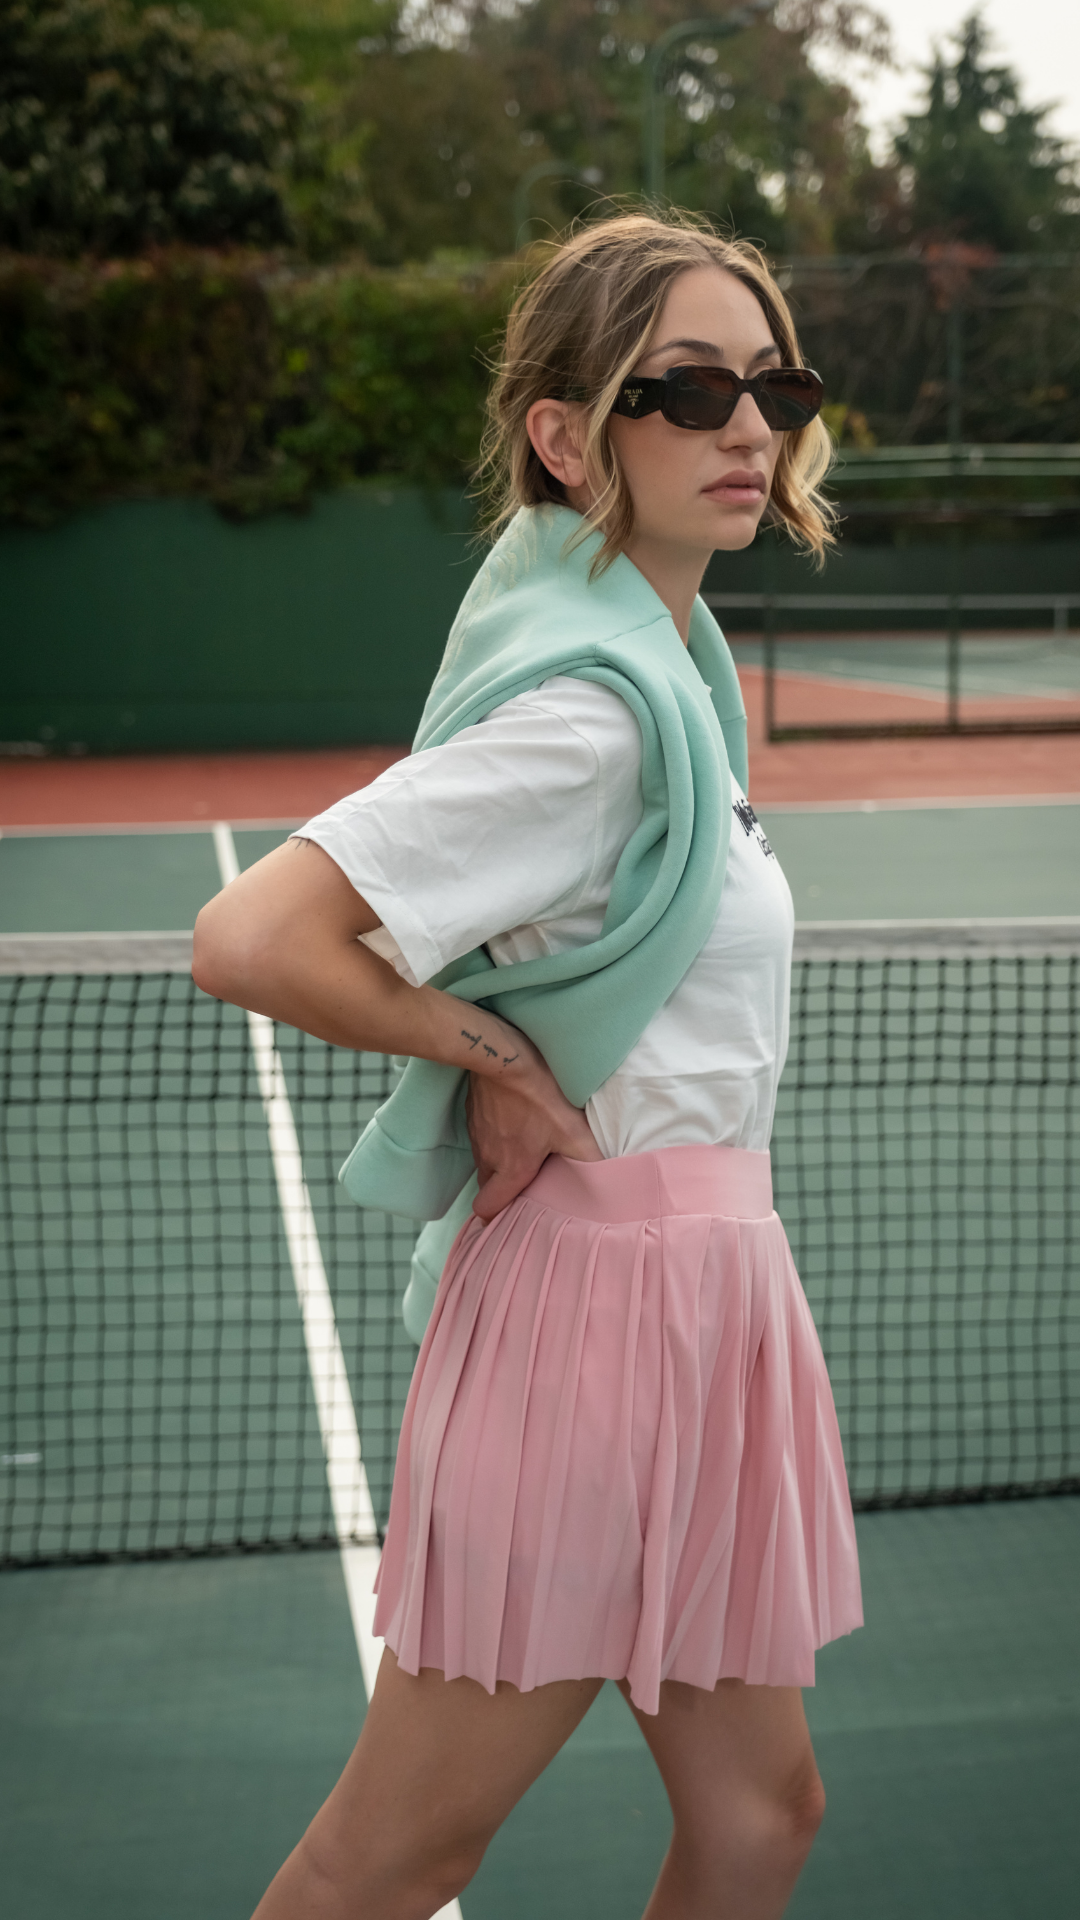 Pink Tennis Skirt 